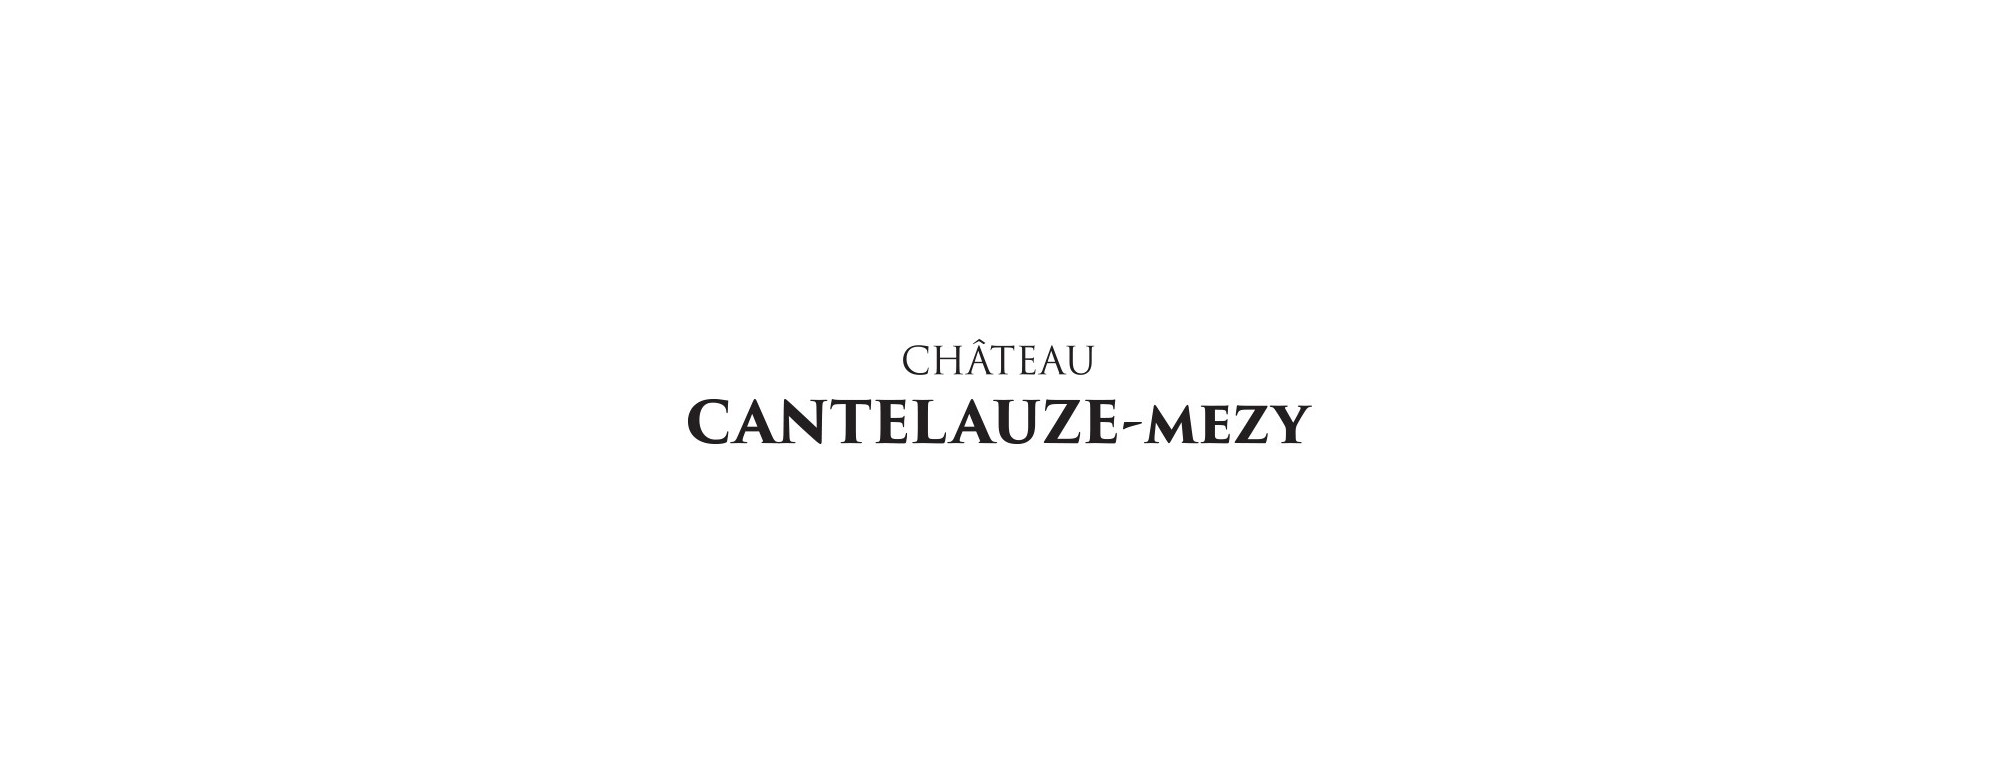 Château Cantelauze Mezy - Franck Mezy